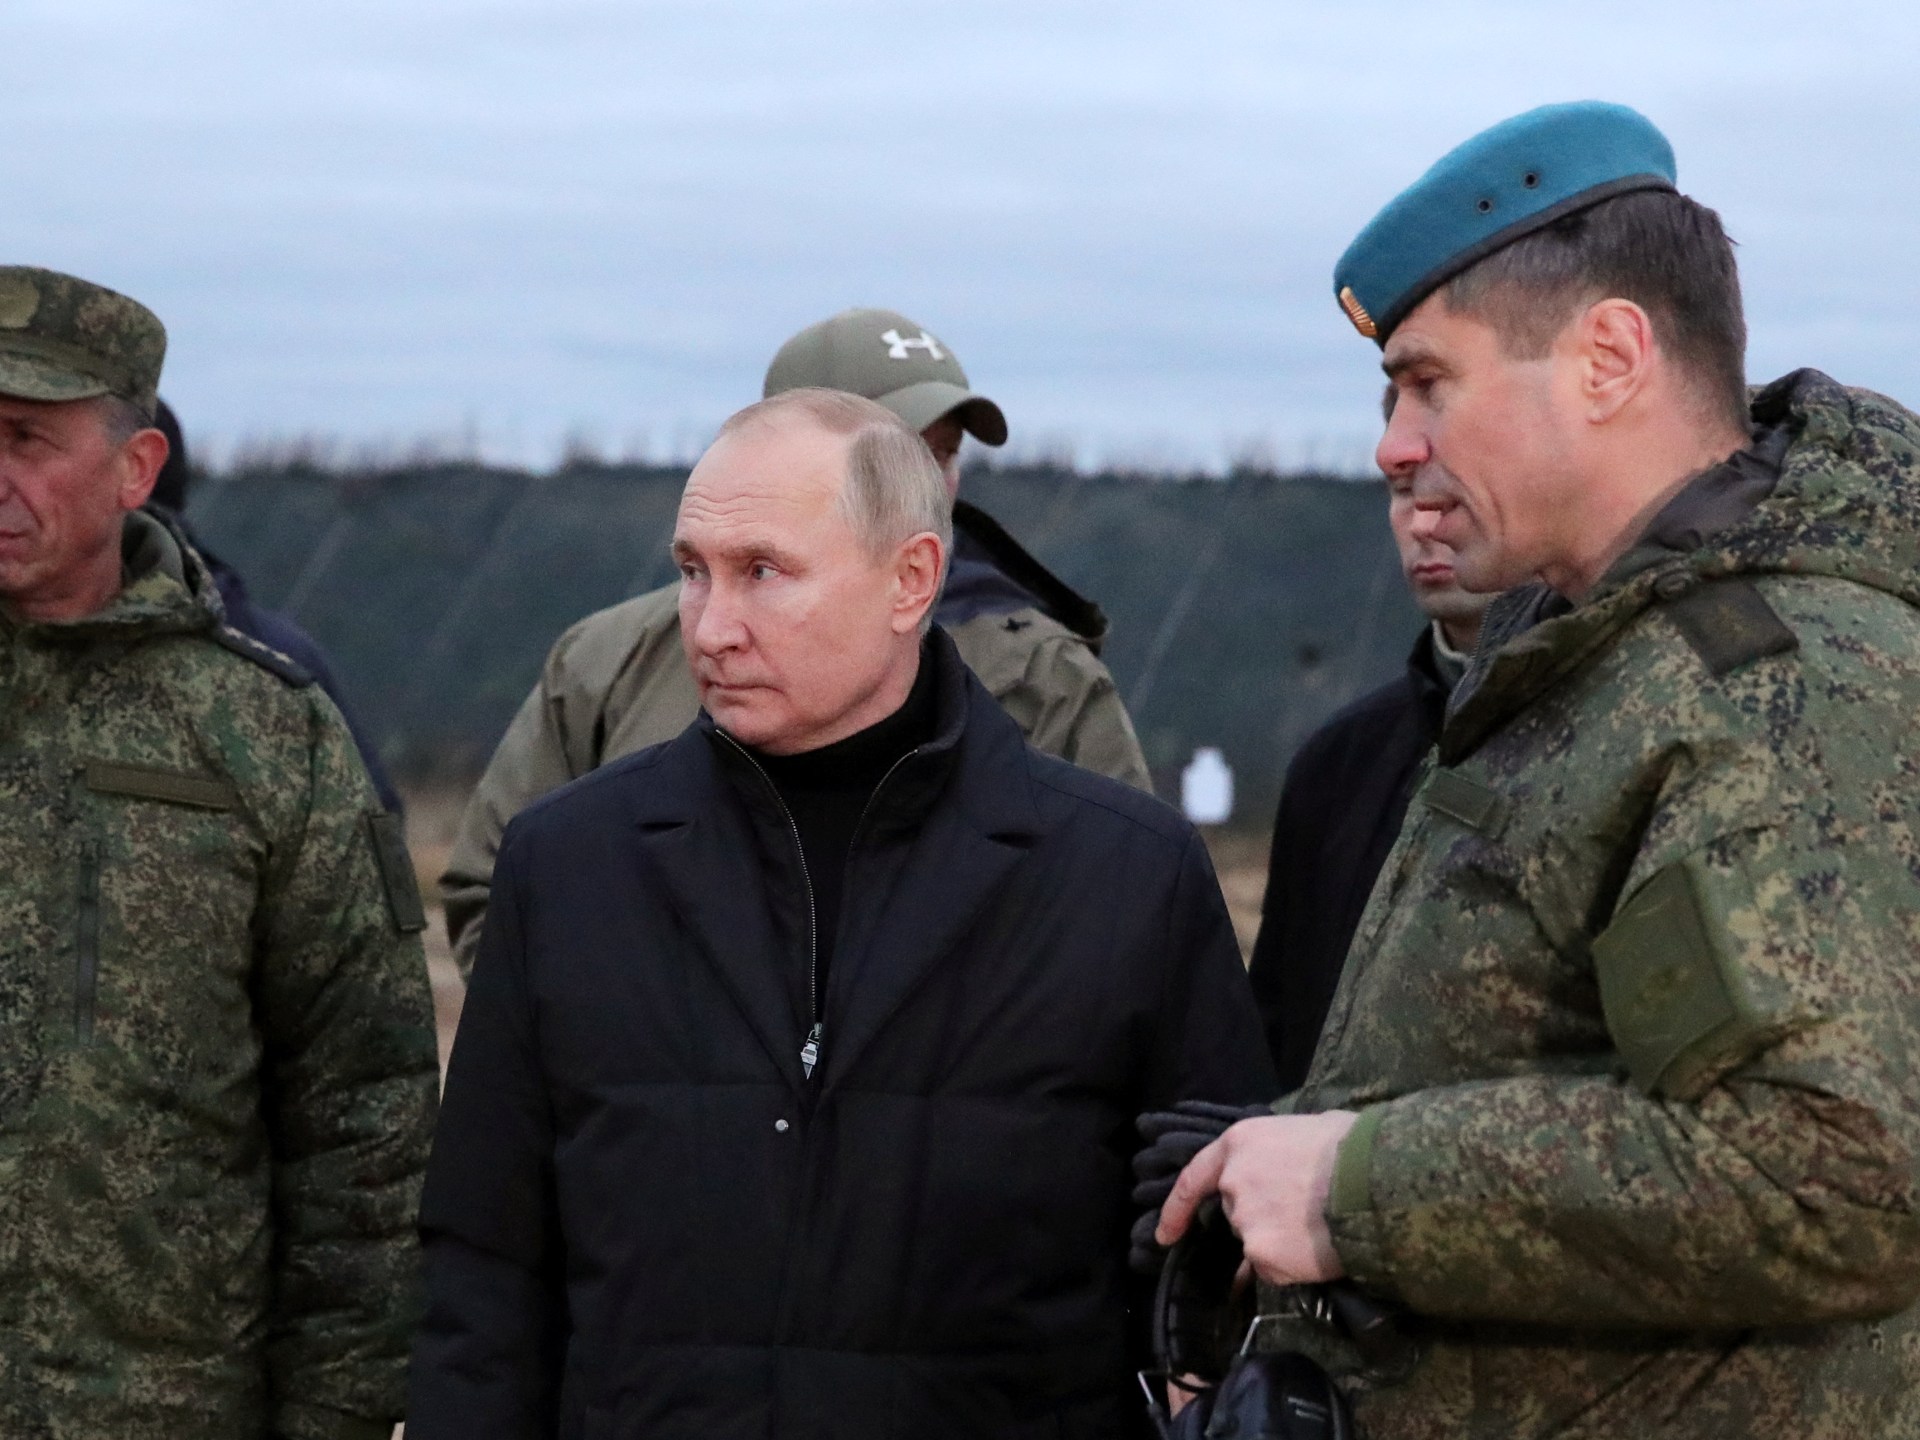 Rusko oznamuje konec branné povinnosti;  Ukrajina říká, že je potřeba „nová vlna“ |  válečné zprávy mezi Ruskem a Ukrajinou